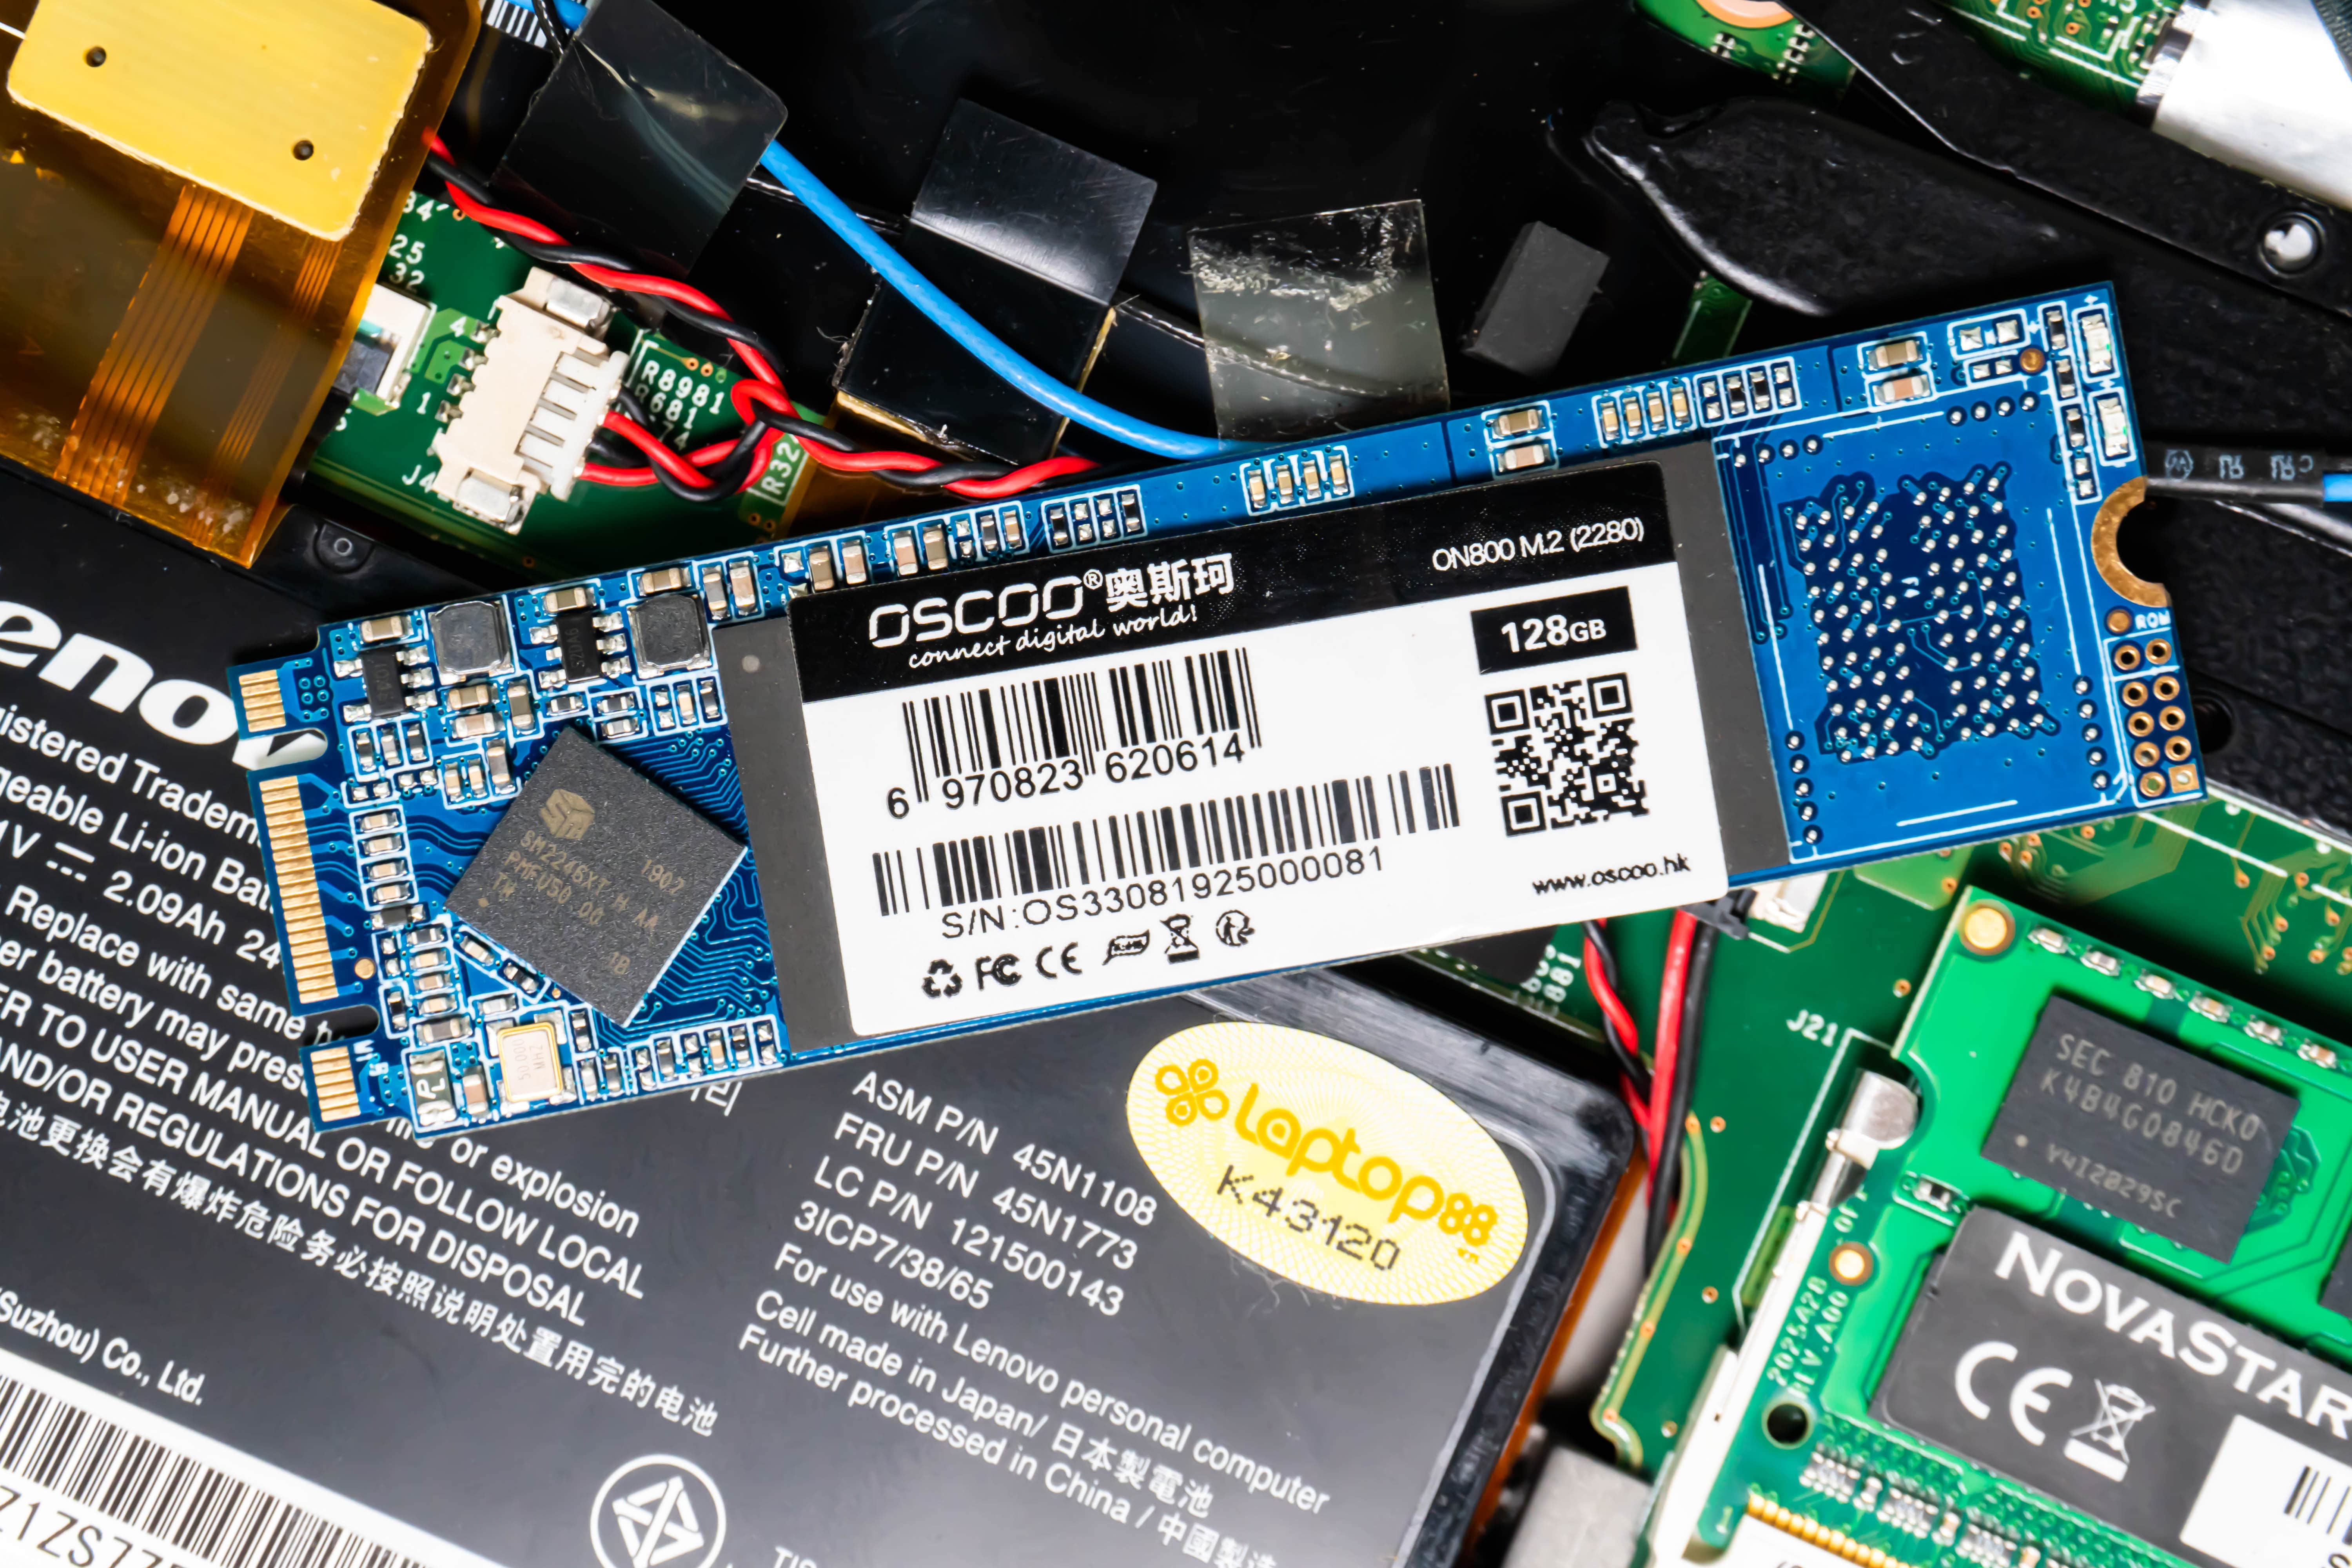 Ổ cứng SSD 128GB M.2 2280 Oscoo - Hàng Chính Hãng0